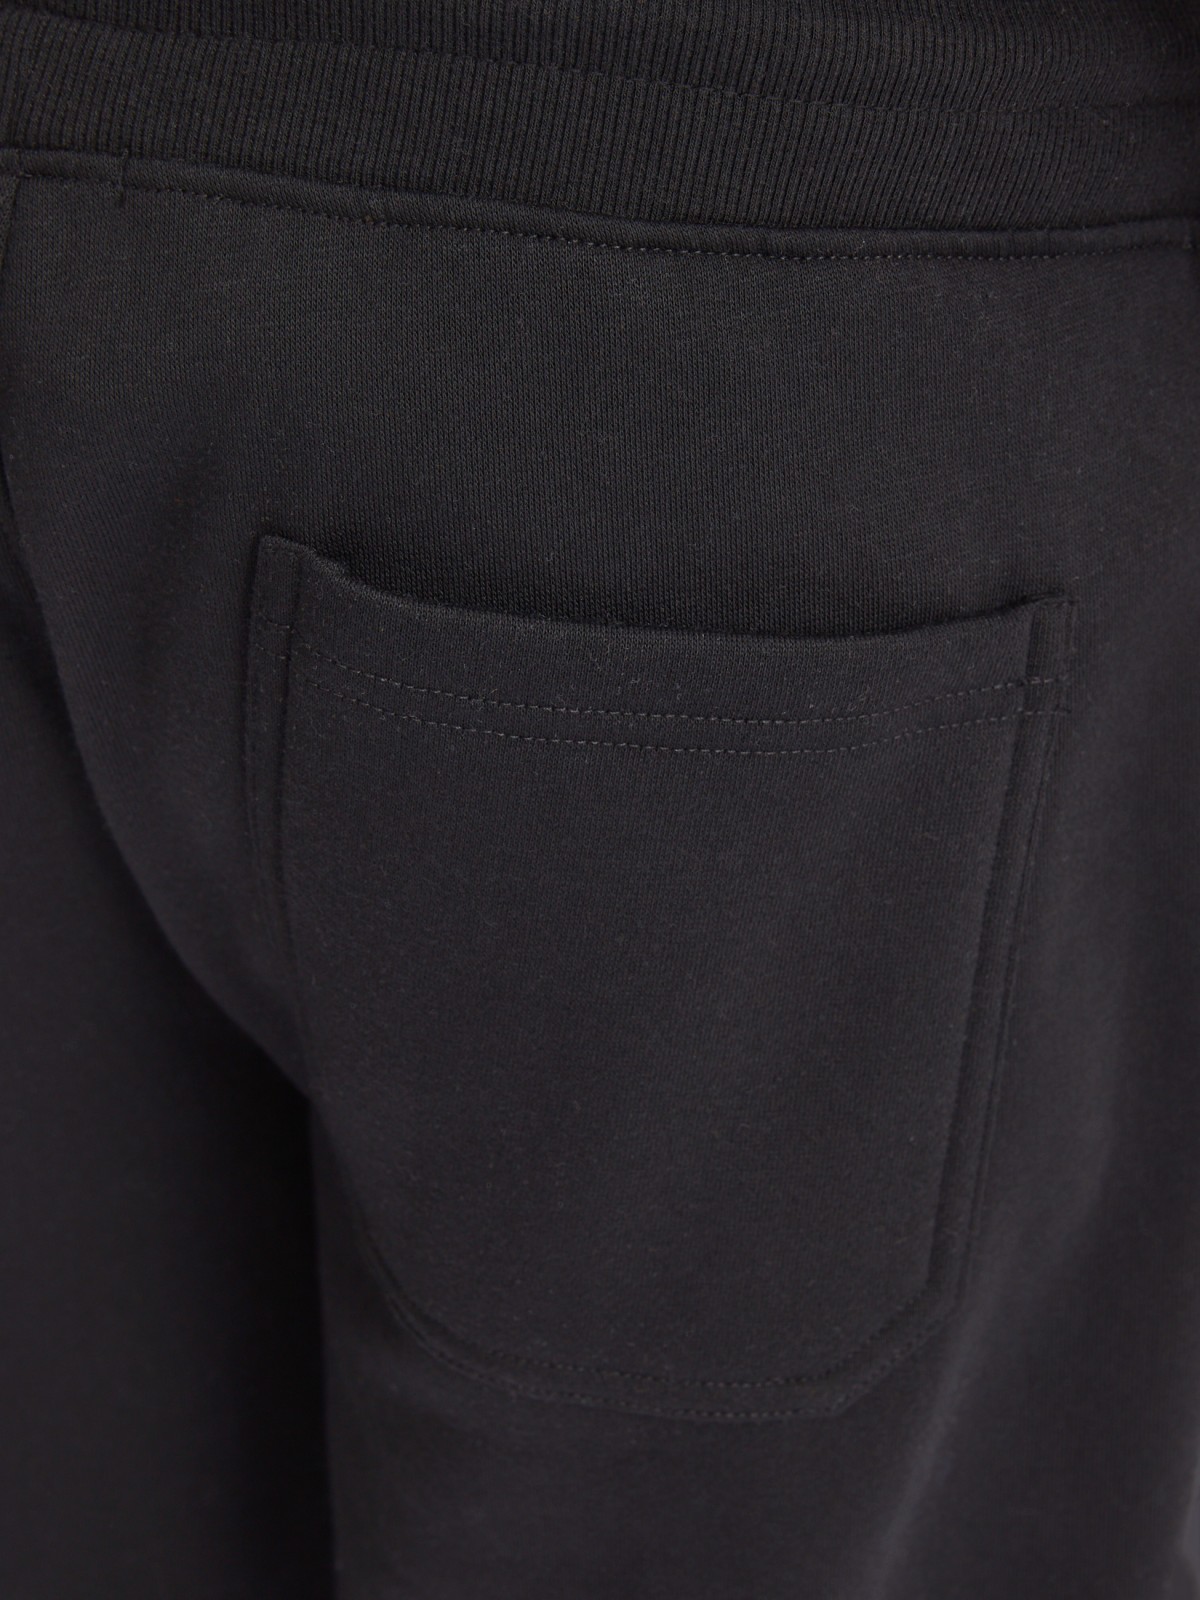 Утеплённые трикотажные брюки-джоггеры в спортивном стиле